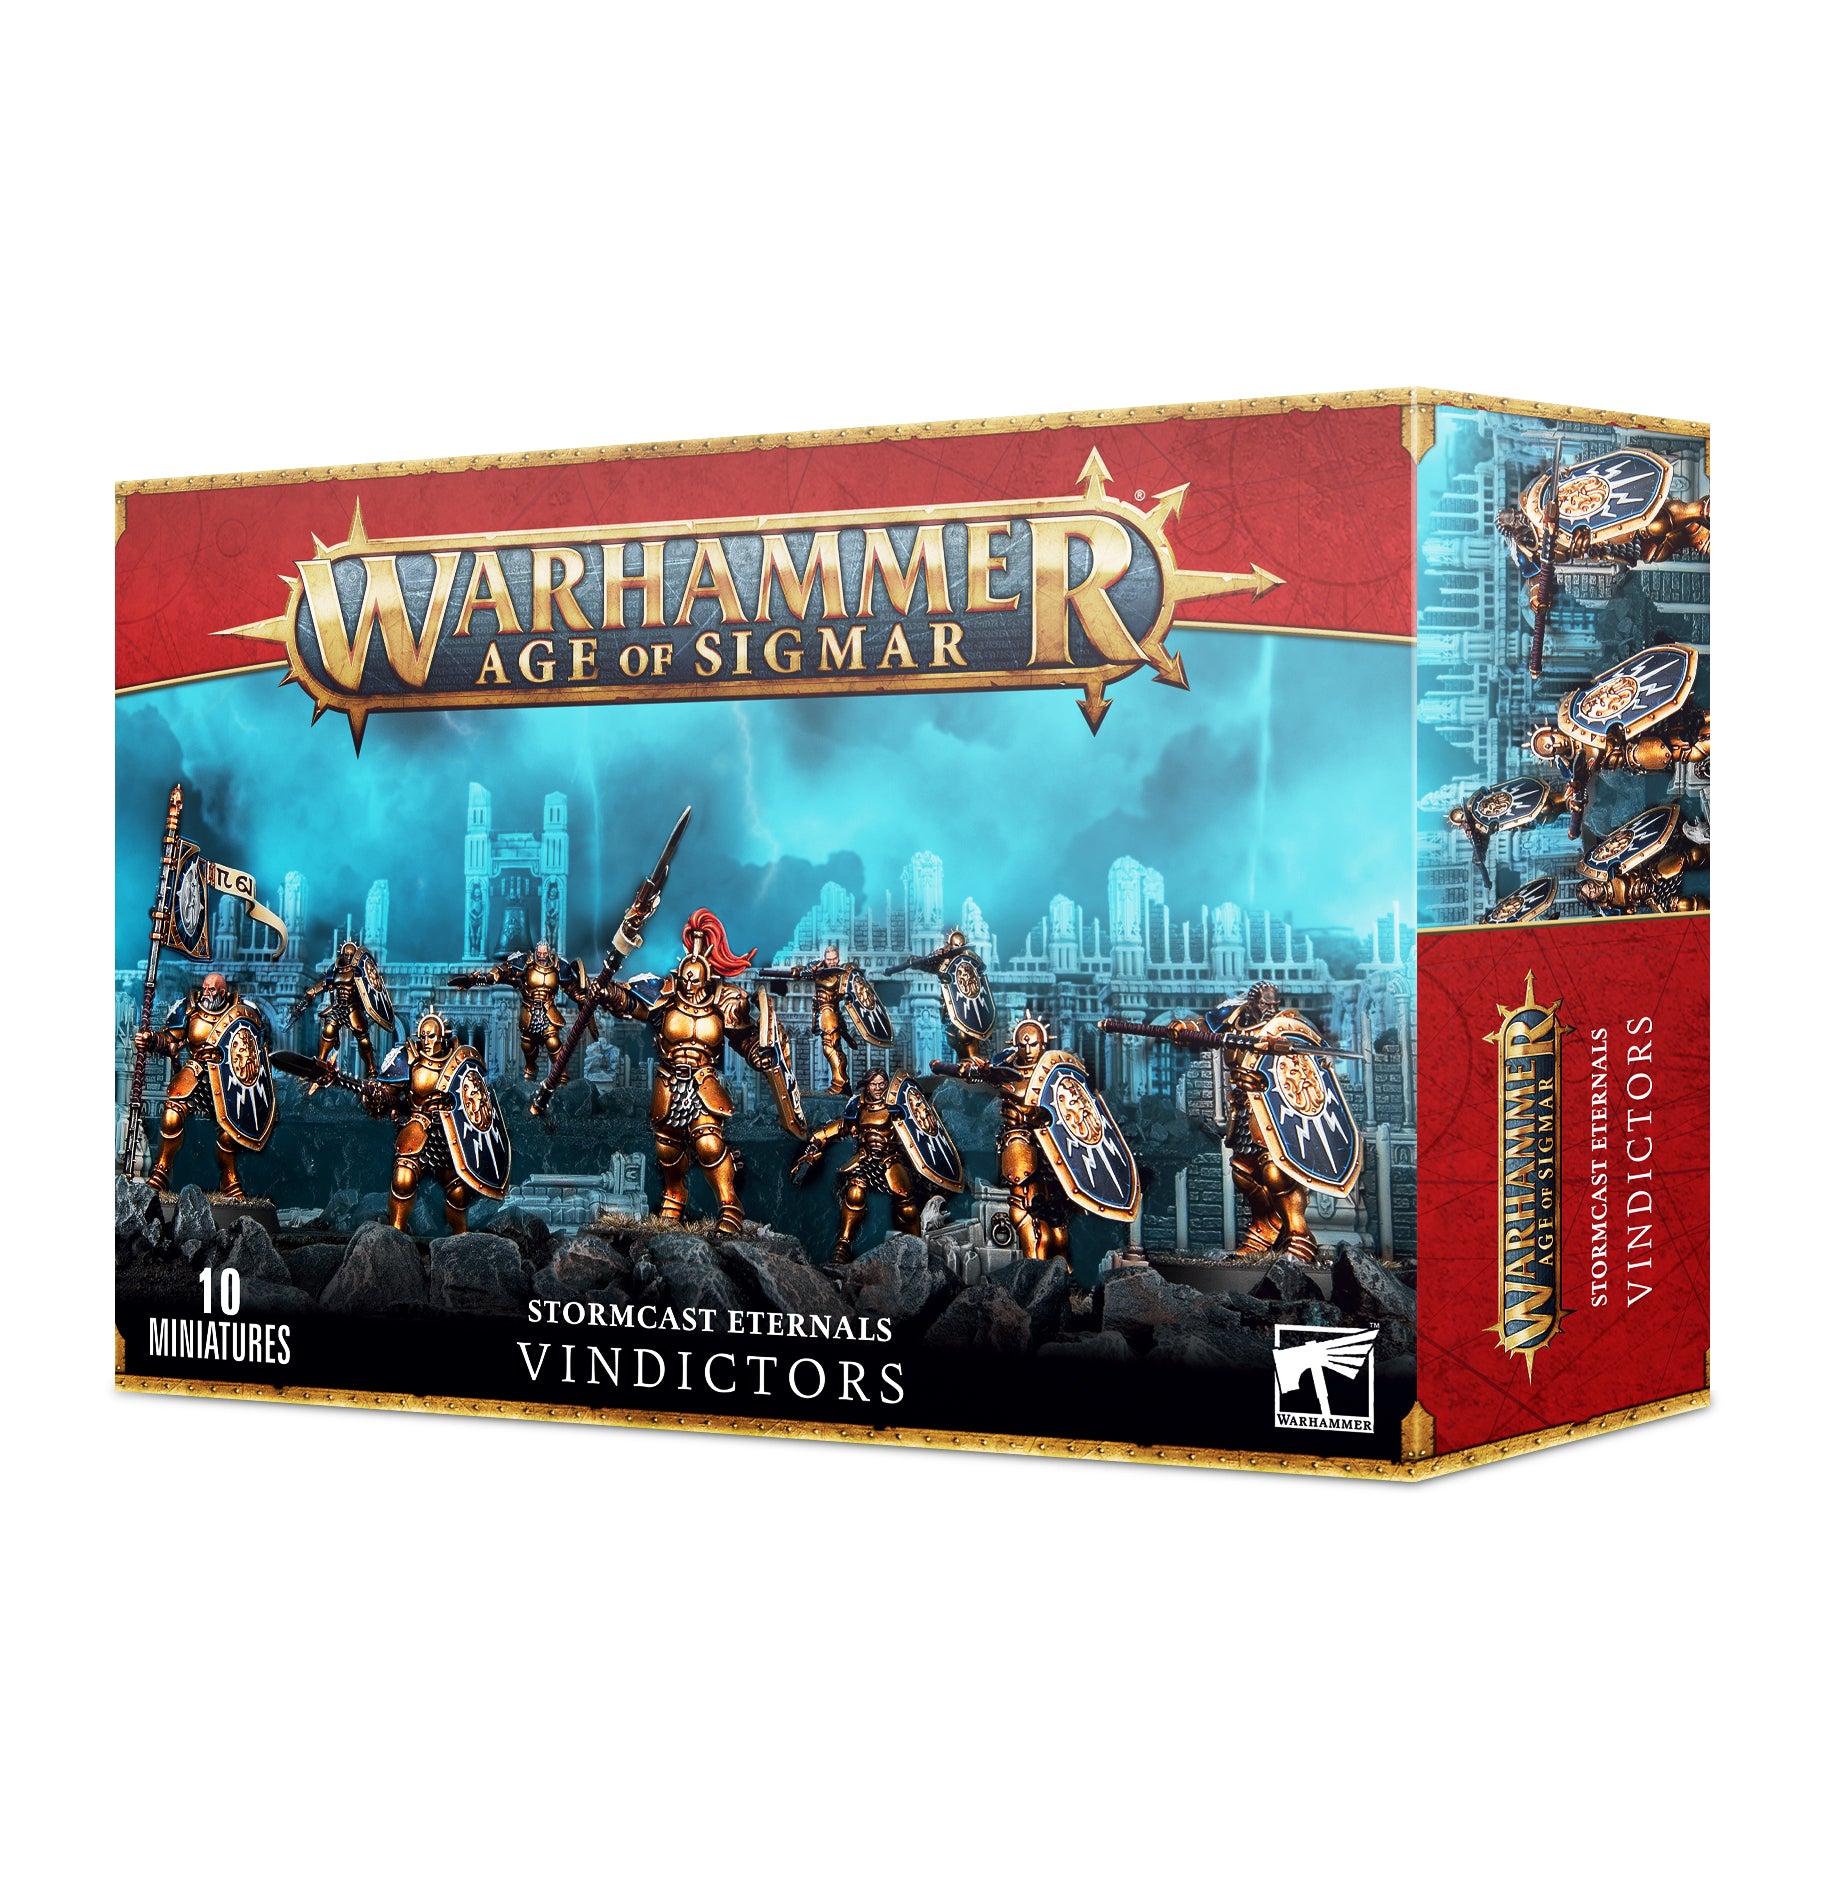 Stormcast Eternals Vindictors, Warhammer Age of Sigmar